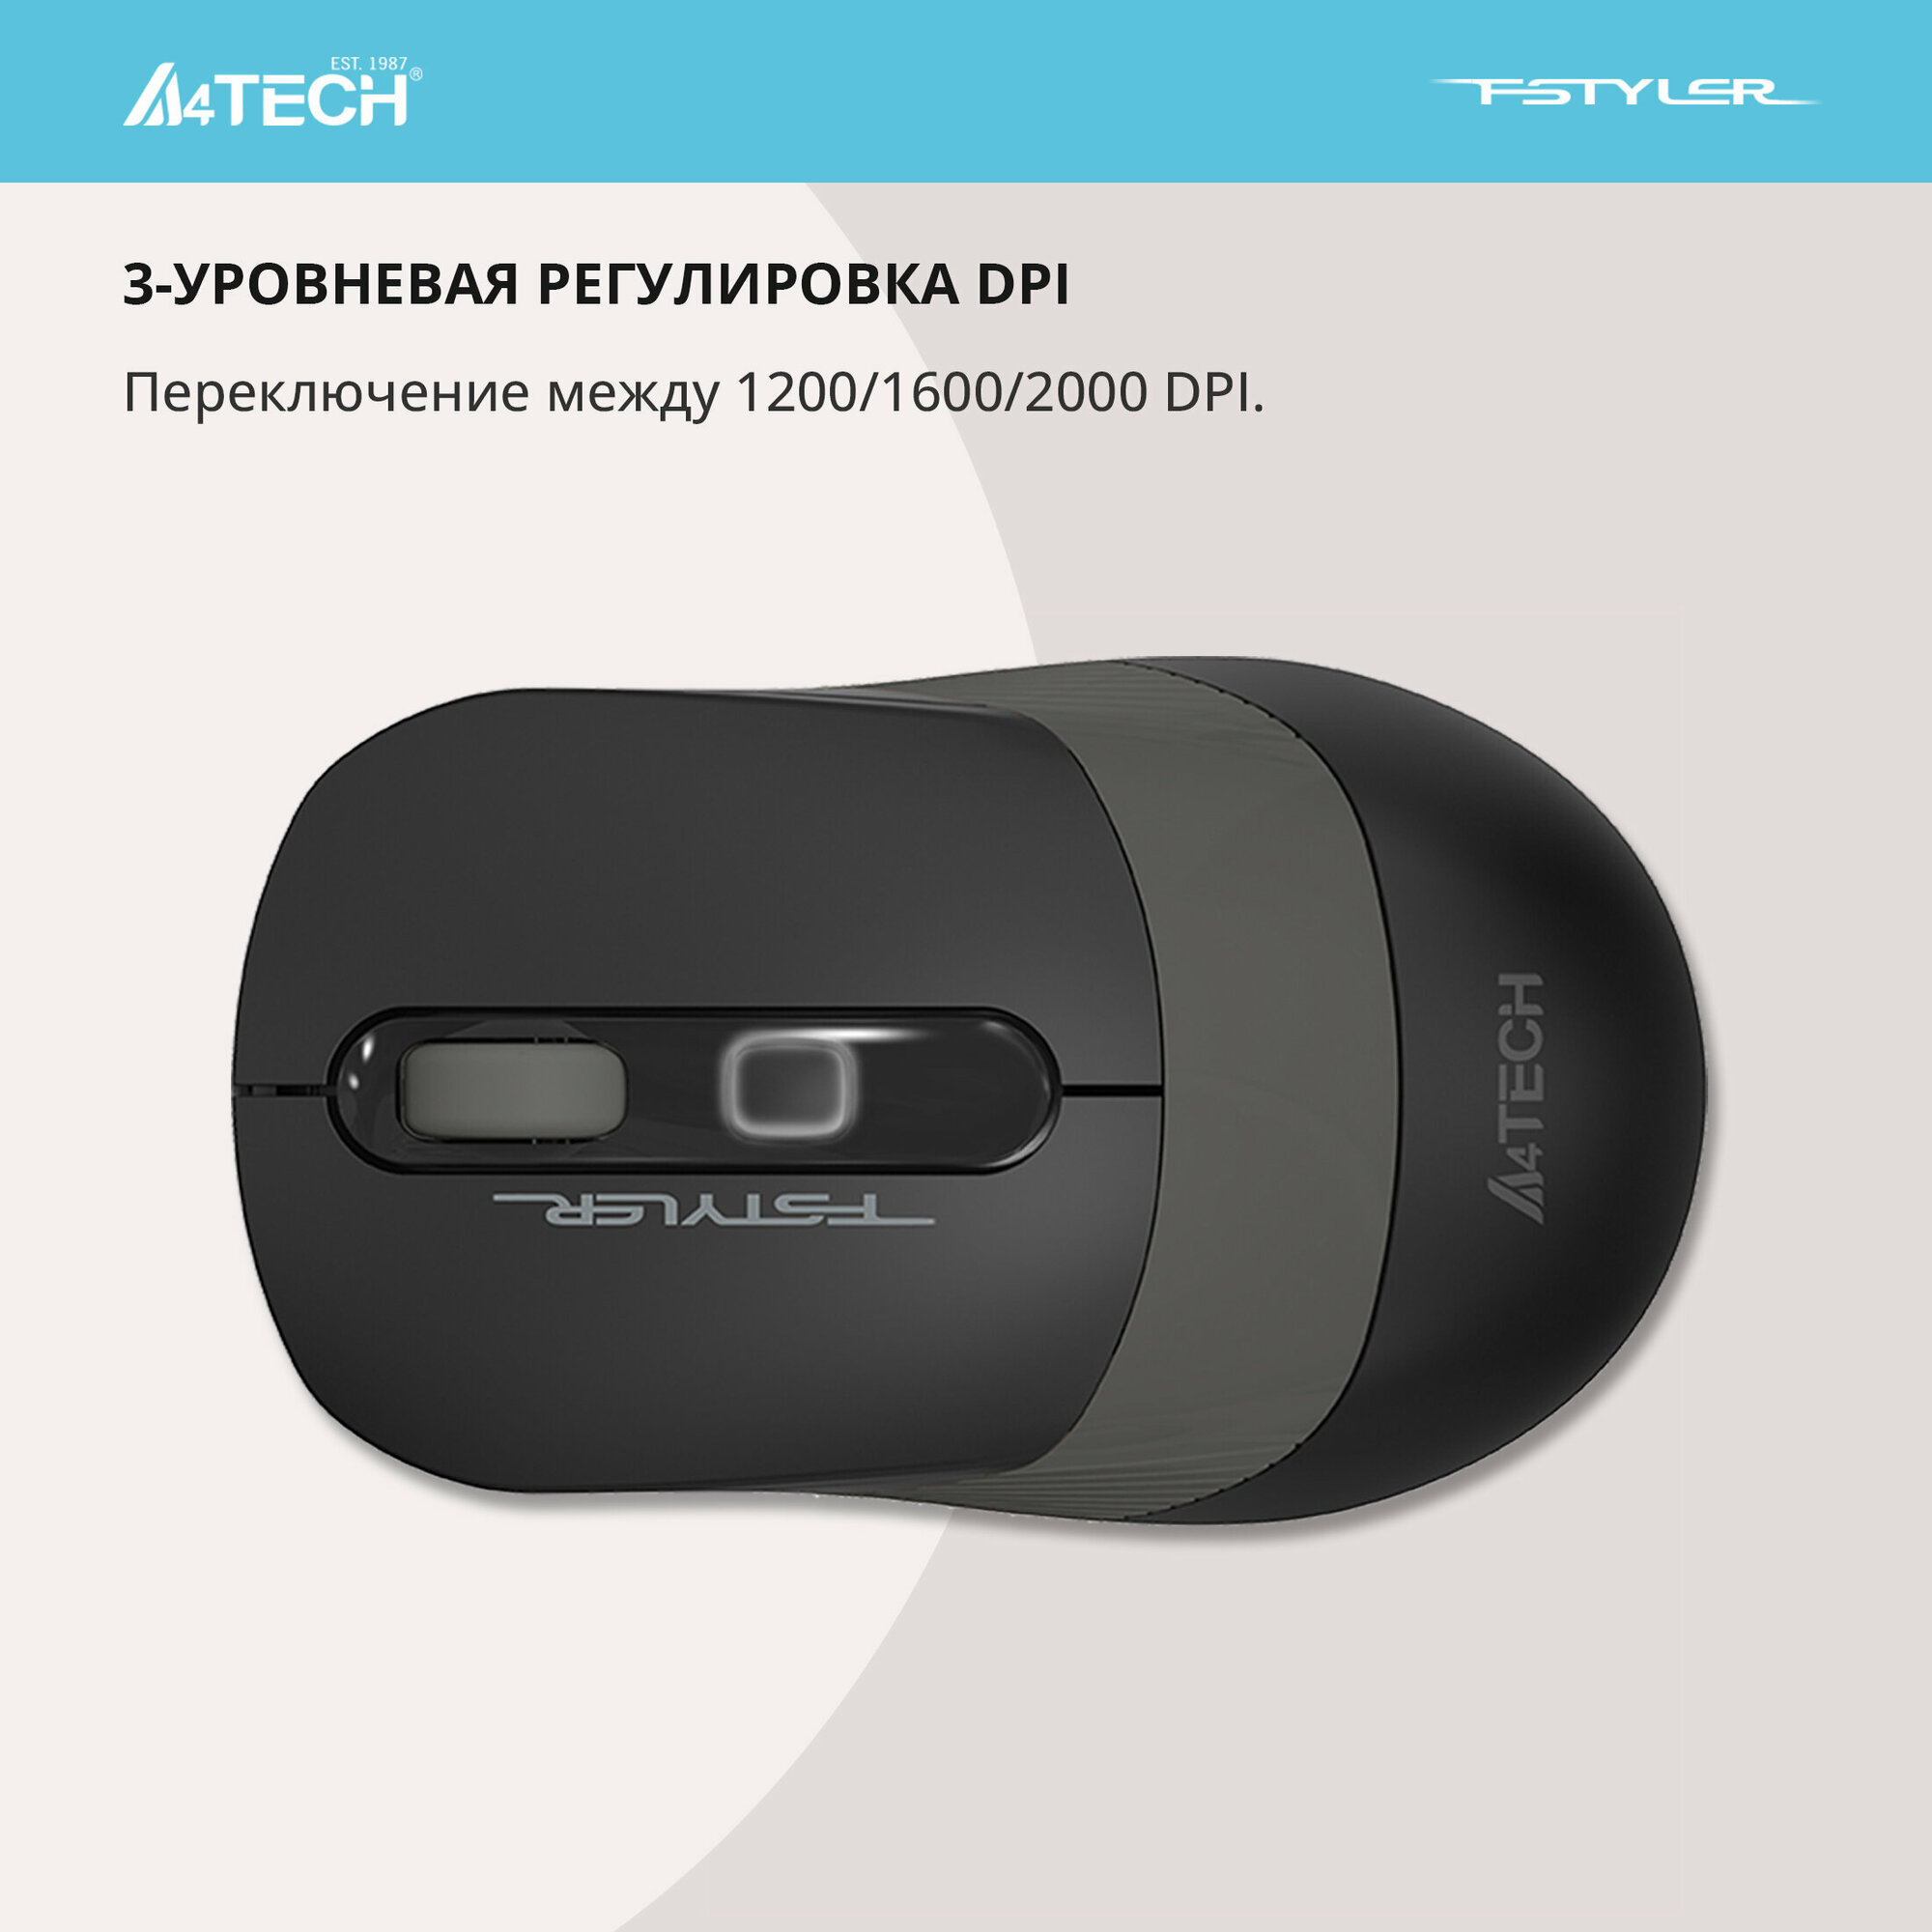 Мышь A4TECH Fstyler , оптическая, беспроводная, USB, черный и синий - фото №19